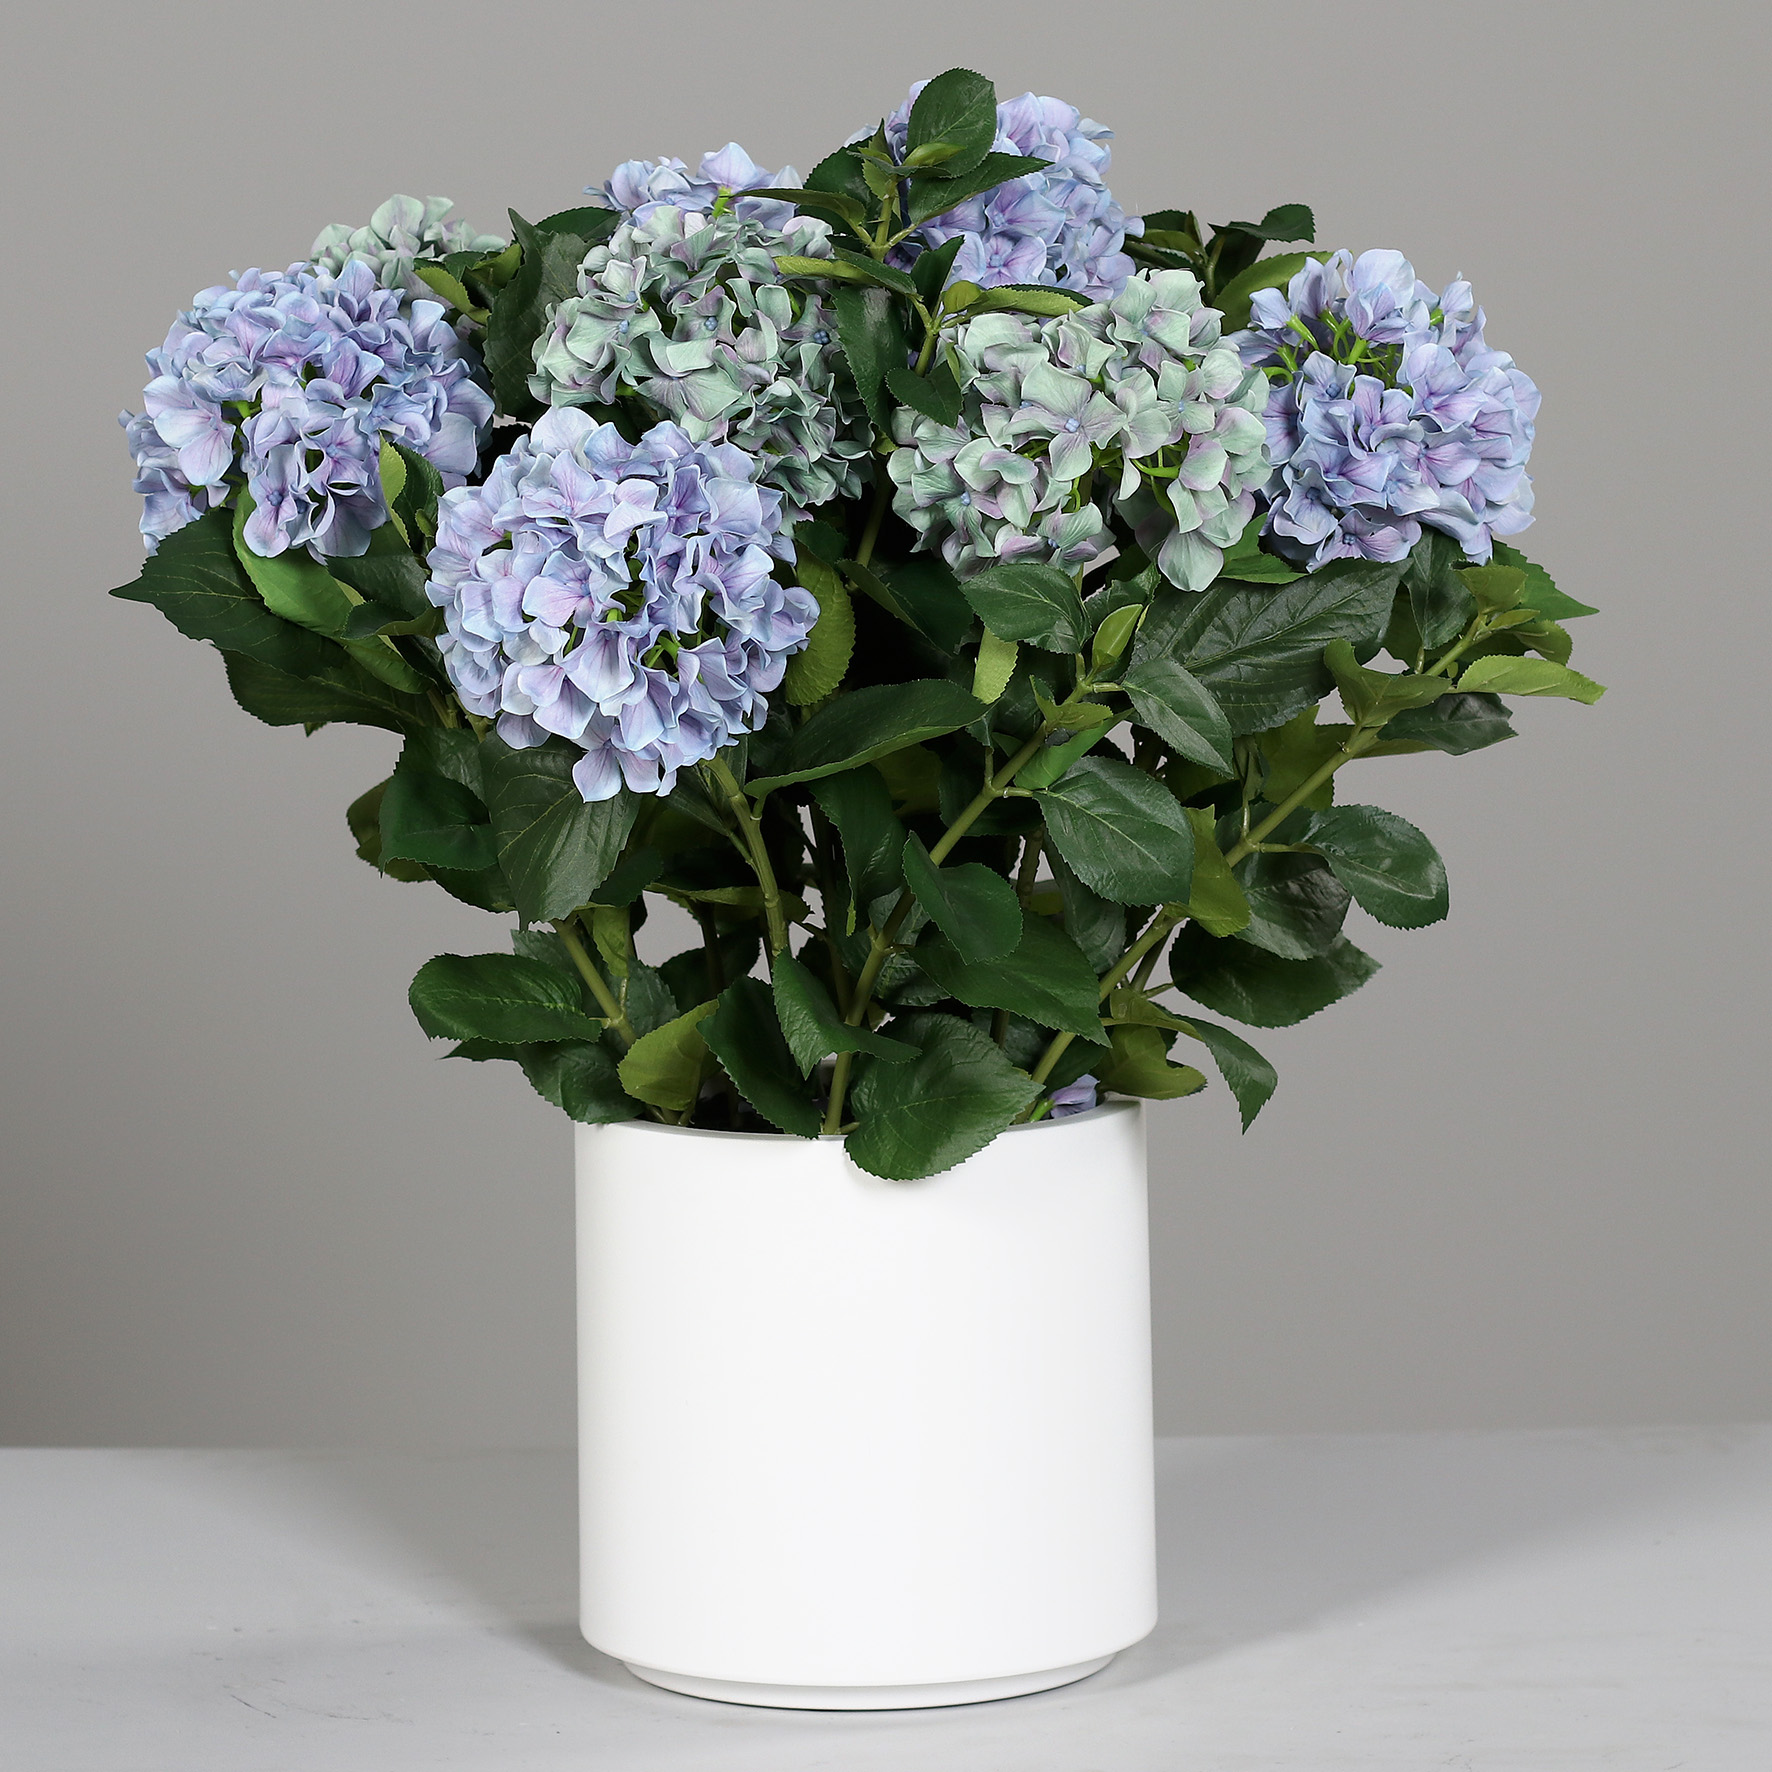 Hortensientopf 75x65cm blau-grün im weißen Topf DP künstliche Hortensie Blumen Pflanzen Kunstpflanzen Kunstblumen